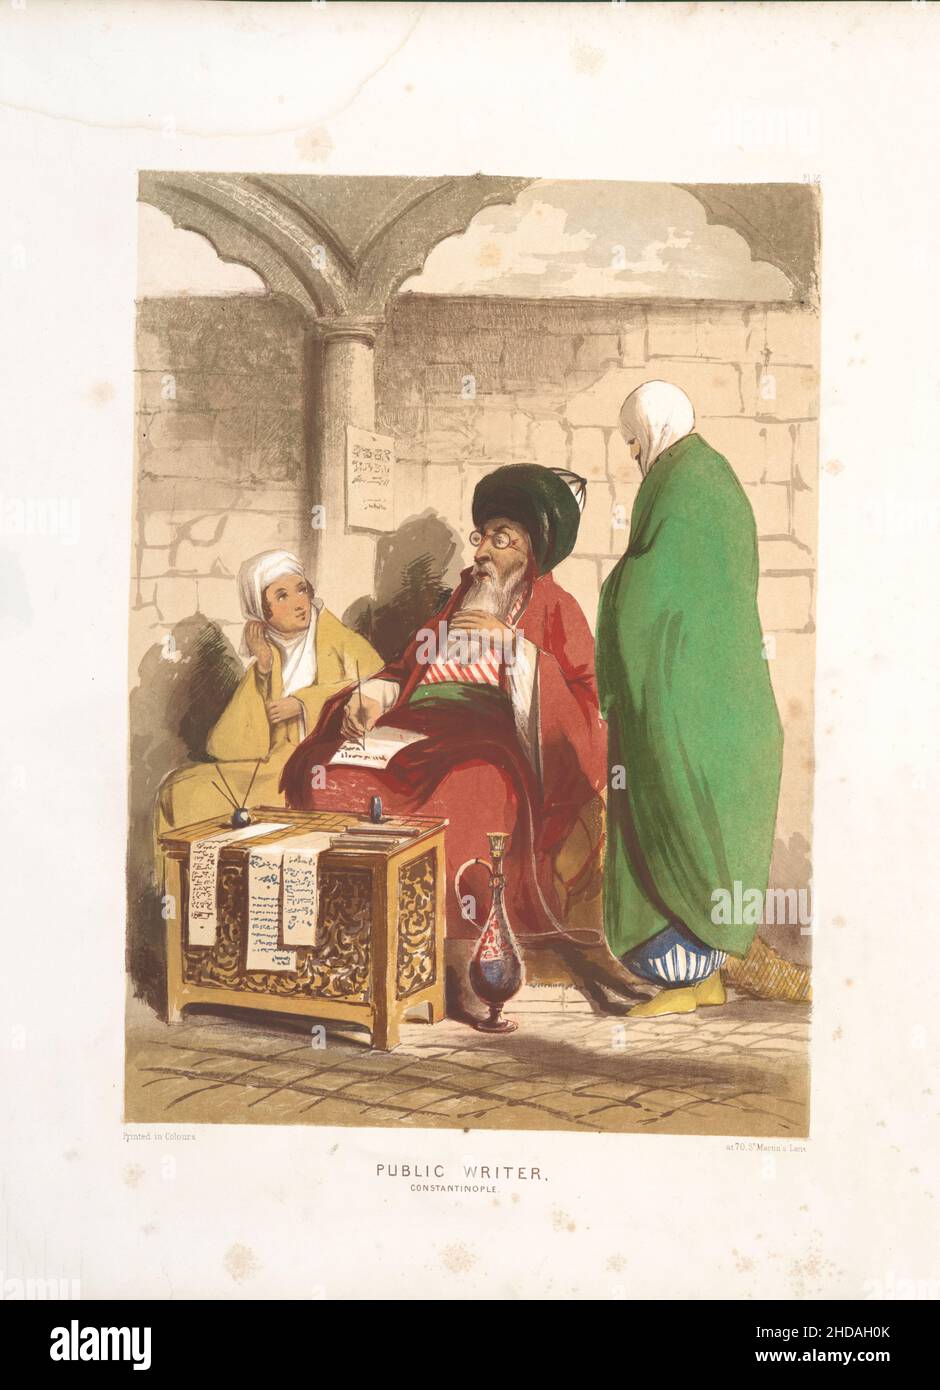 Litografía a color vintage del Imperio Otomano: Escritor público, Constantinopla 1854, por Forbes Mac Bean (artista) y Justin Sutcliffe (litógrafo) Foto de stock